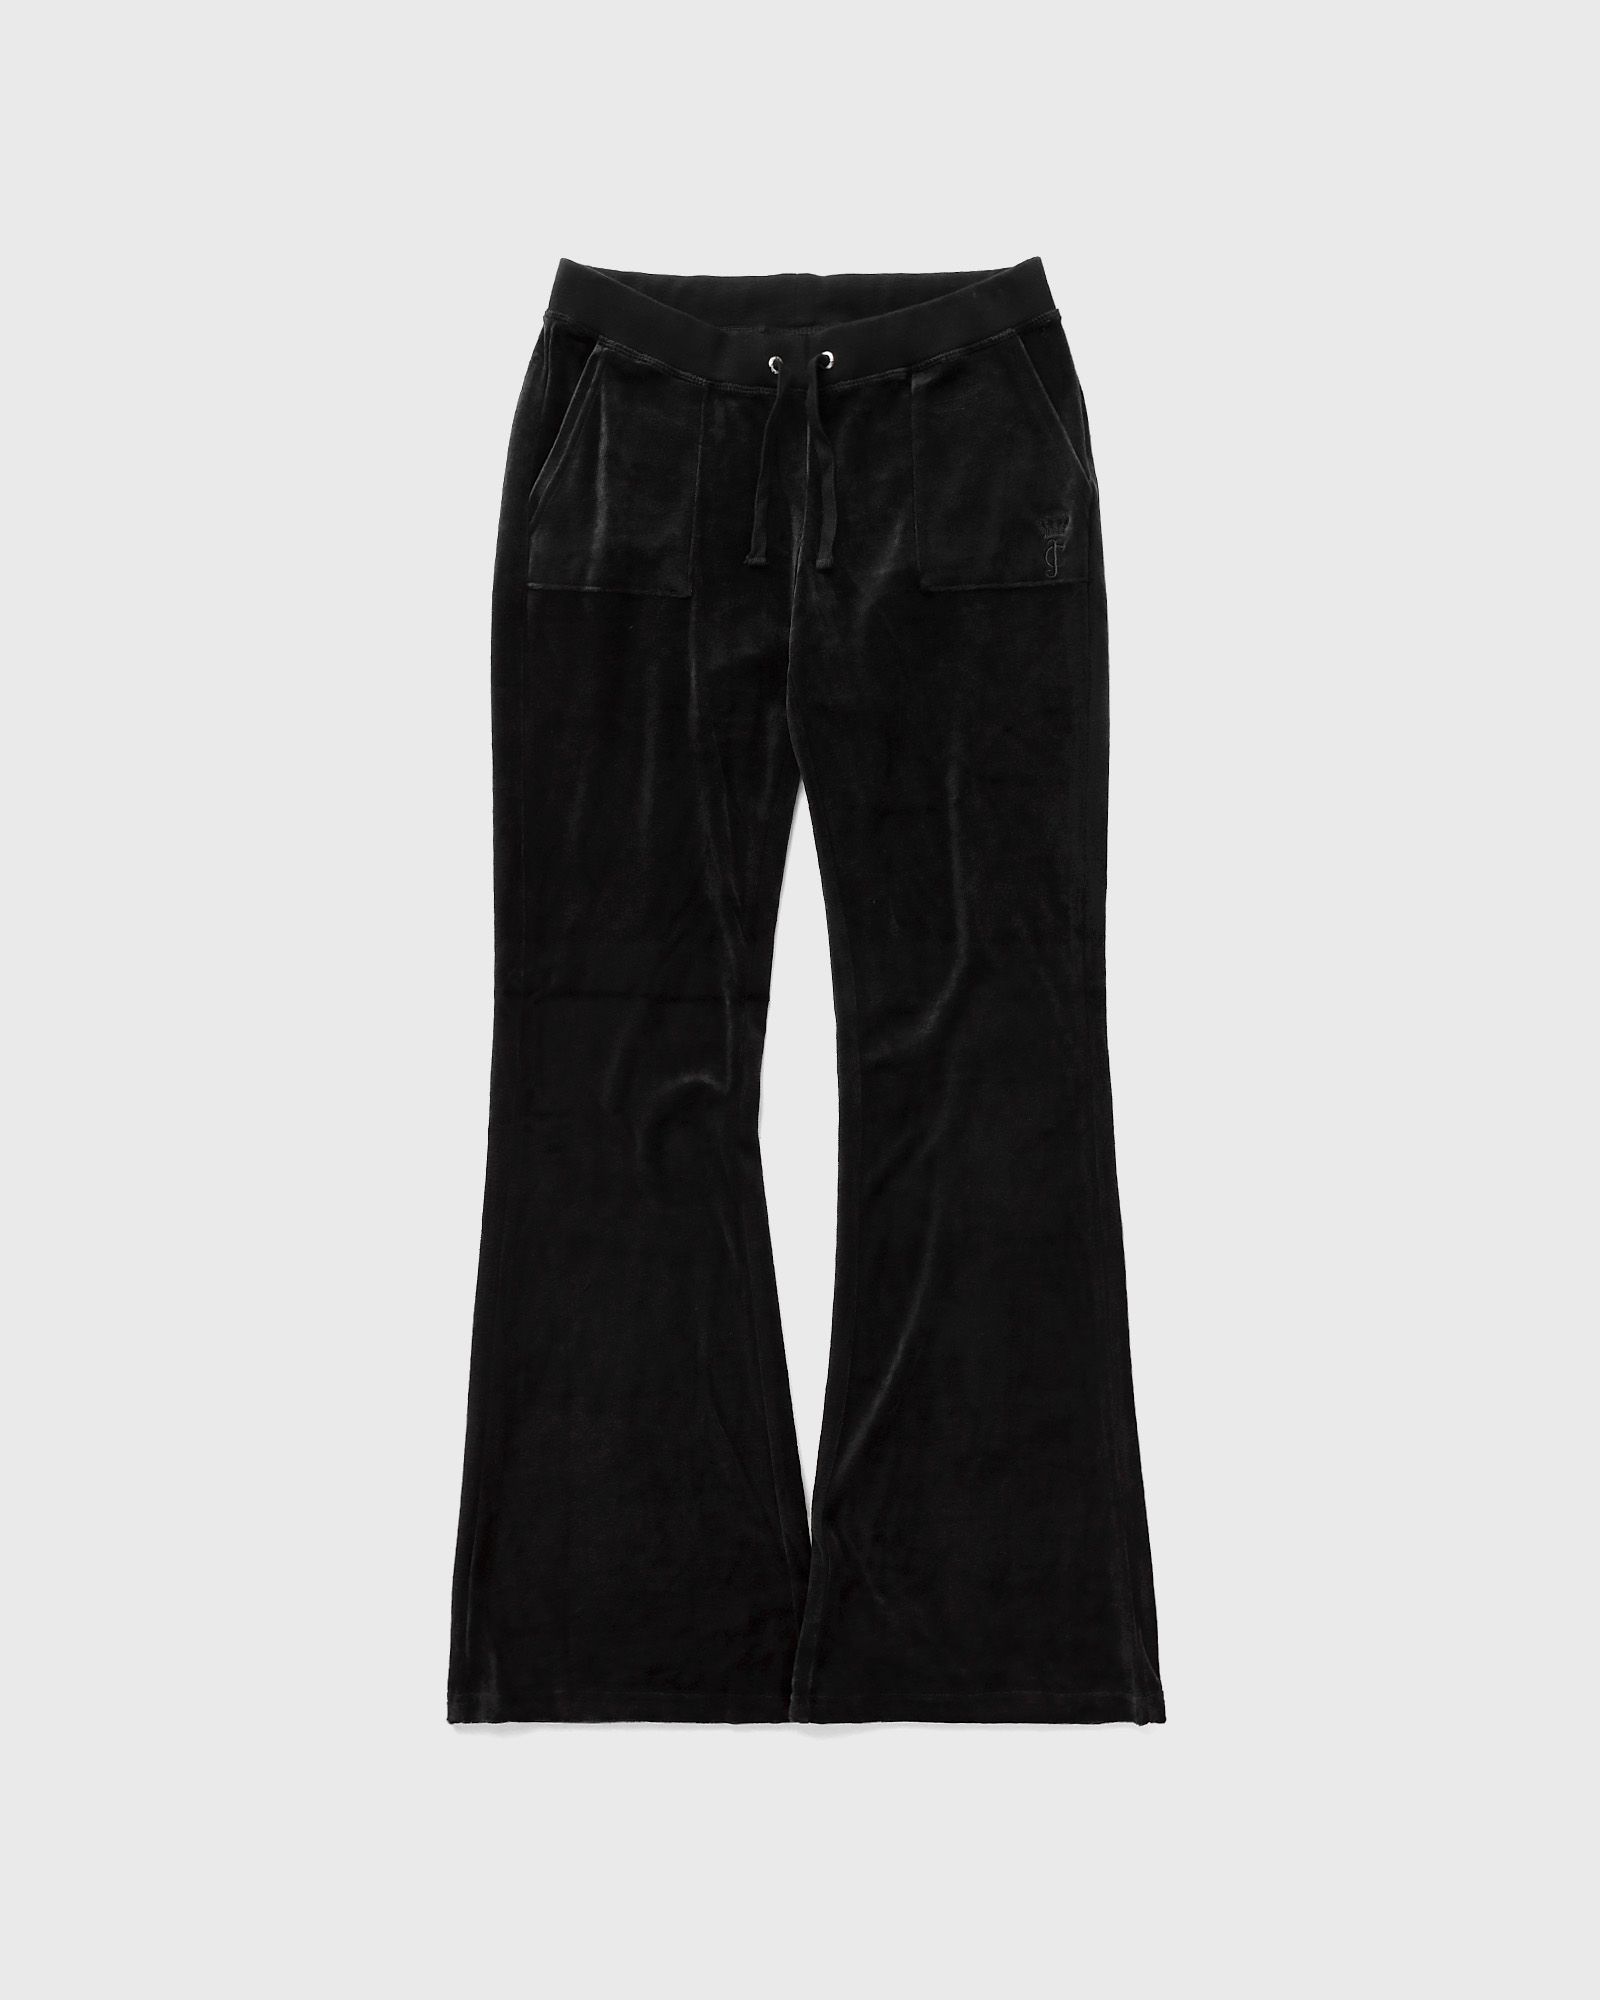 Juicy Couture - wmns caisa pant women sweatpants black in größe:xs